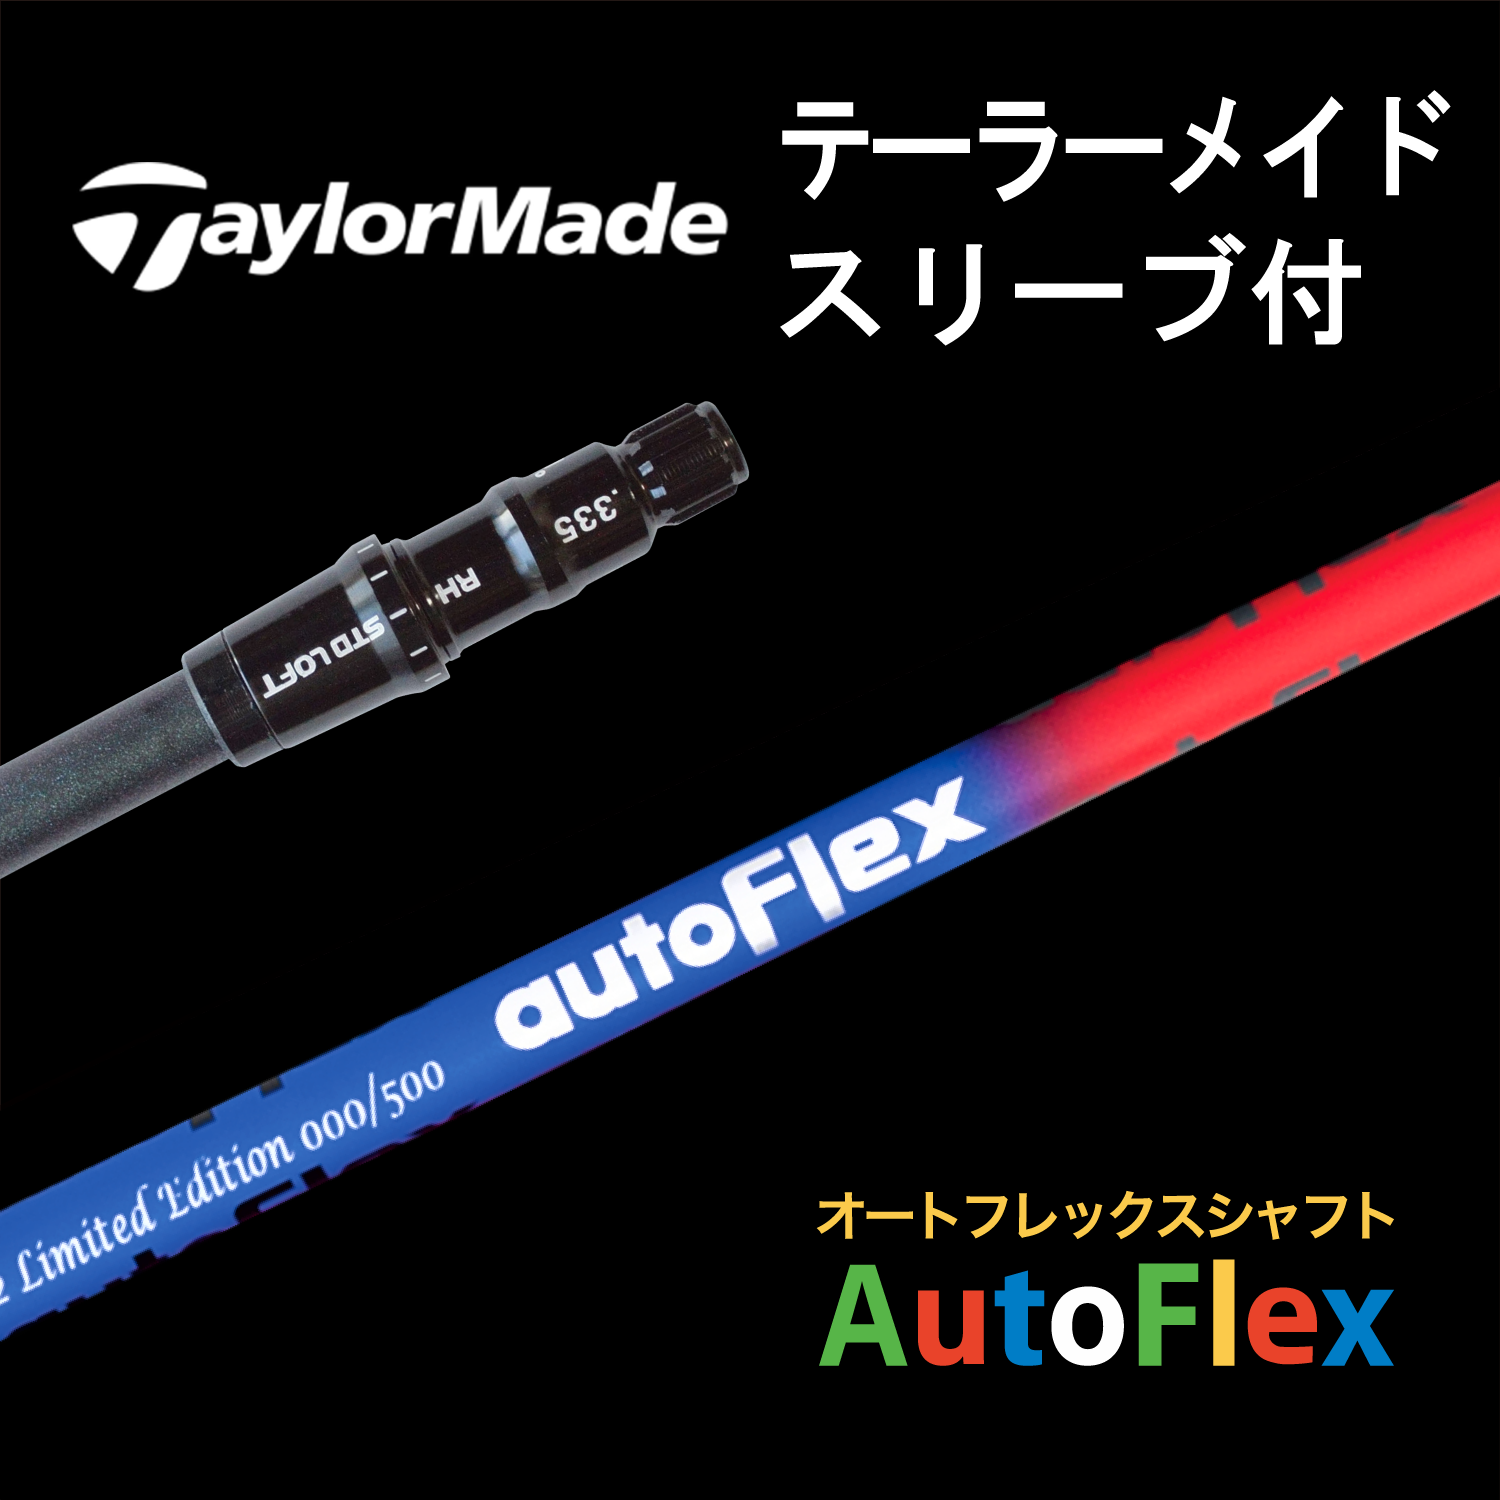 【美品】Auto Flex Taylor Madeスリーブ付シャフト